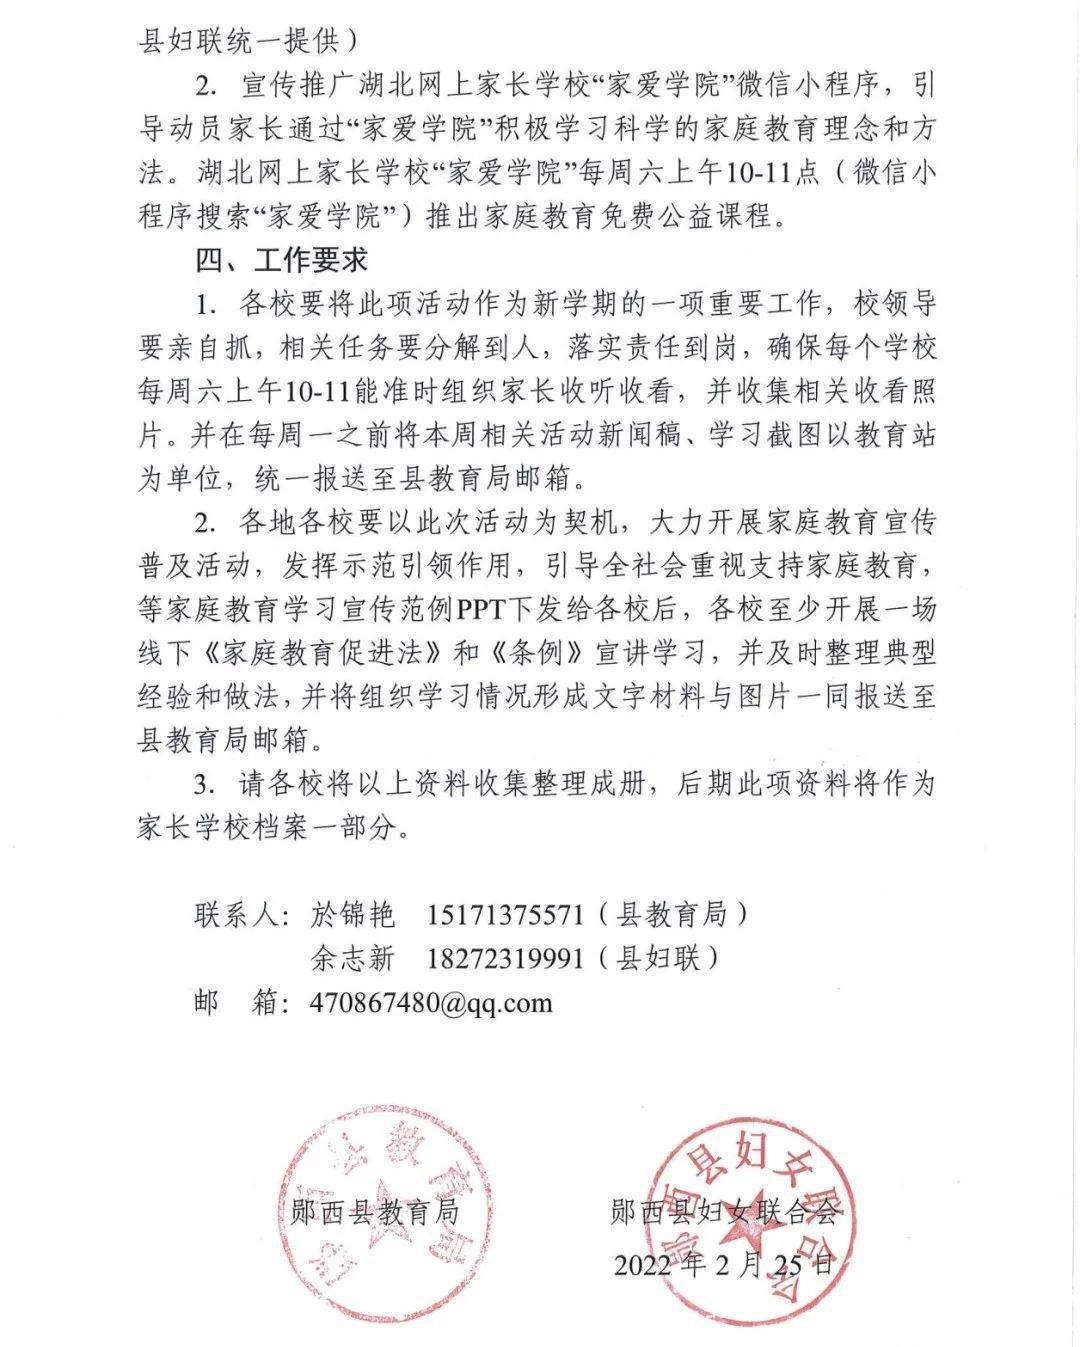 关于中华人民共和国家庭教育促进法和湖北省家庭教育促进条例纳入2022